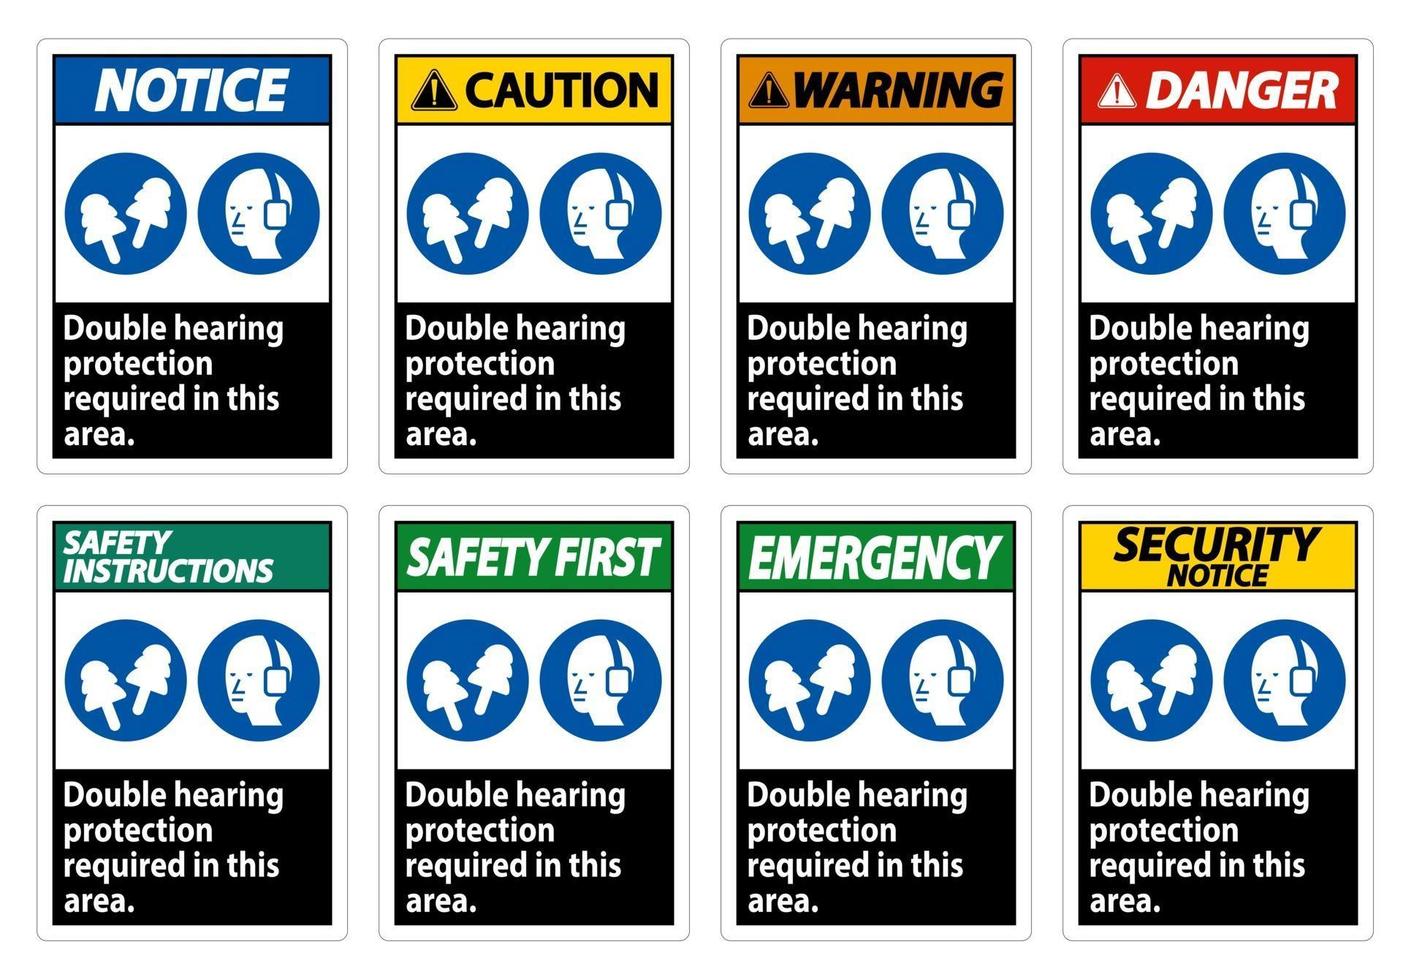 dubbele gehoorbescherming vereist in dit gebied met gehoorkappen en oordopjes vector